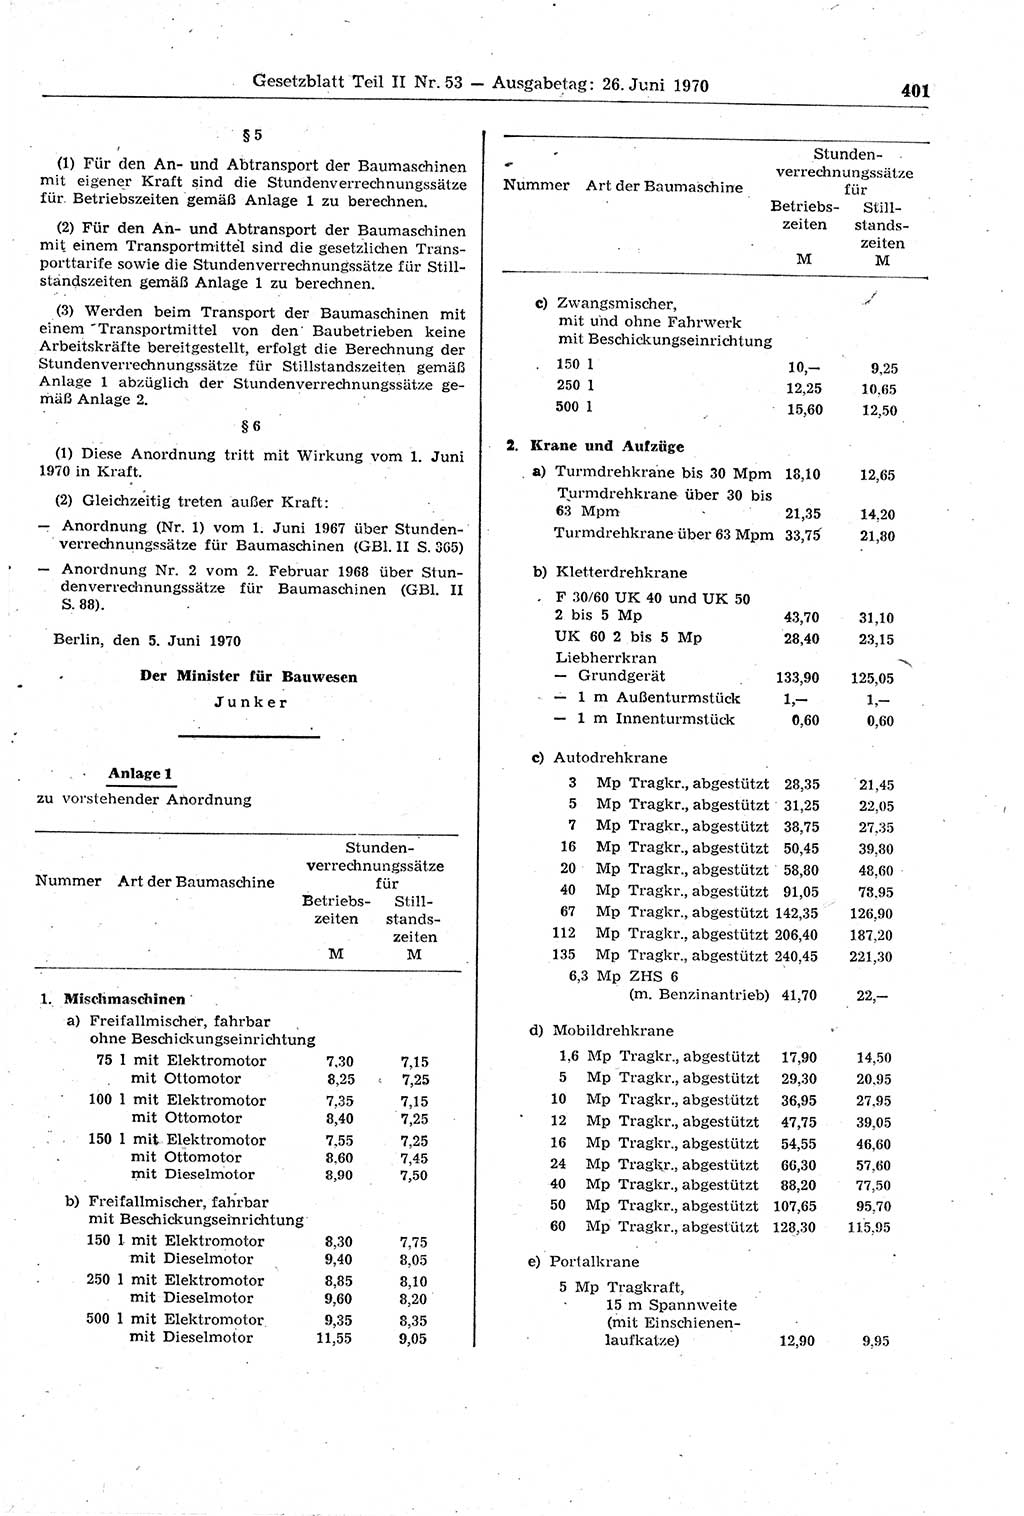 Gesetzblatt (GBl.) der Deutschen Demokratischen Republik (DDR) Teil ⅠⅠ 1970, Seite 401 (GBl. DDR ⅠⅠ 1970, S. 401)